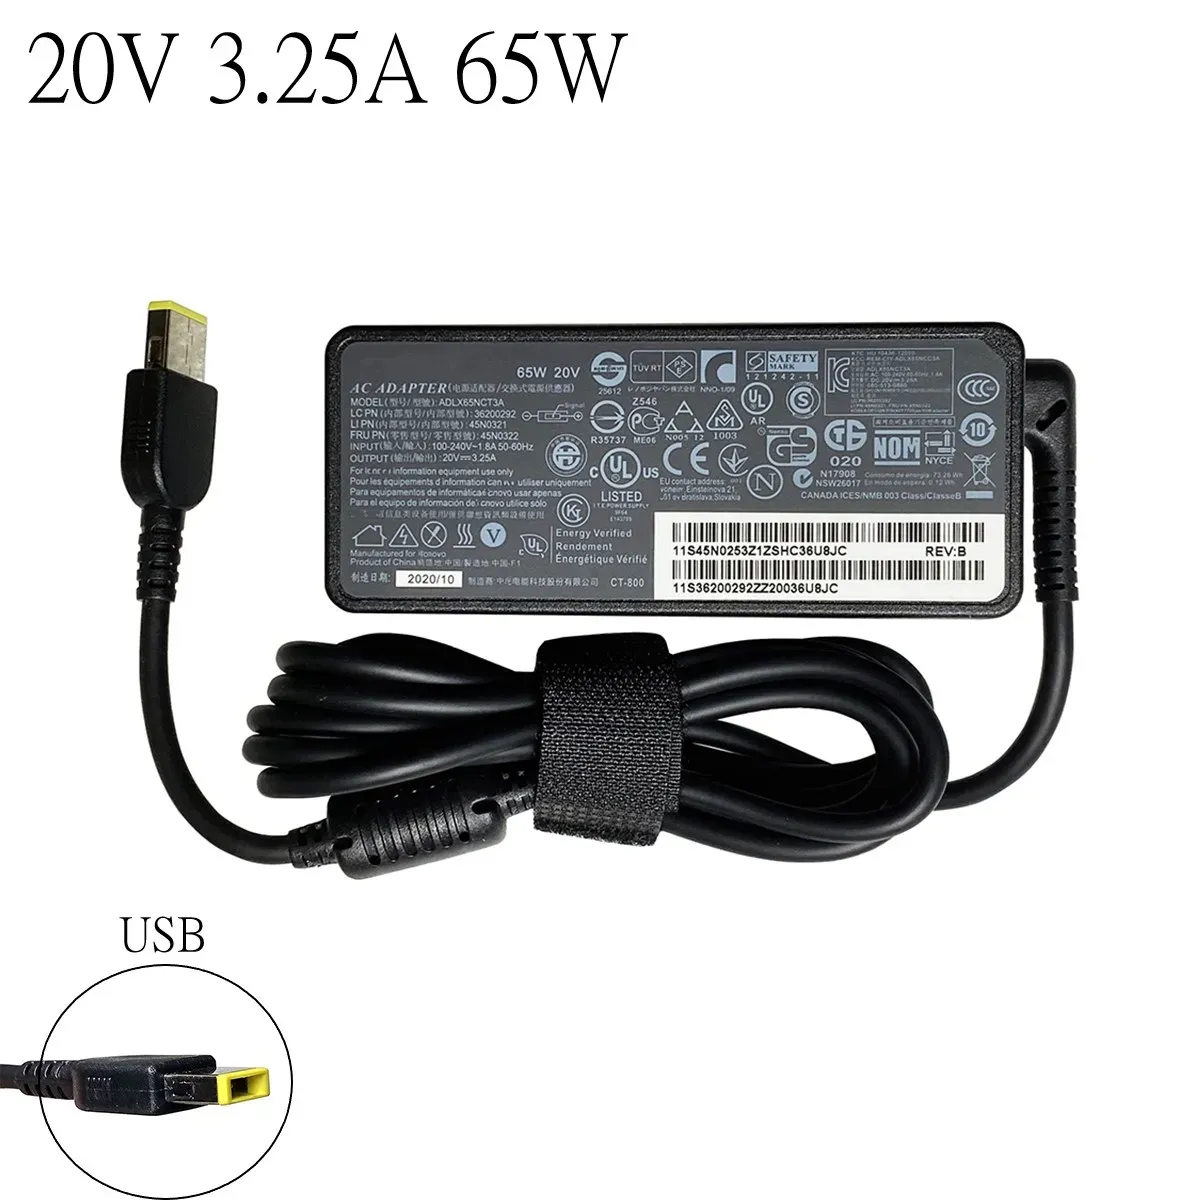 Adapter 20V 3,25A 65W AC Netzteil Laptop Ladegerät Für Lenovo X1 Carbon E431 E531 S431 T440s T440 x230s X240 X240s G410 G500 G505